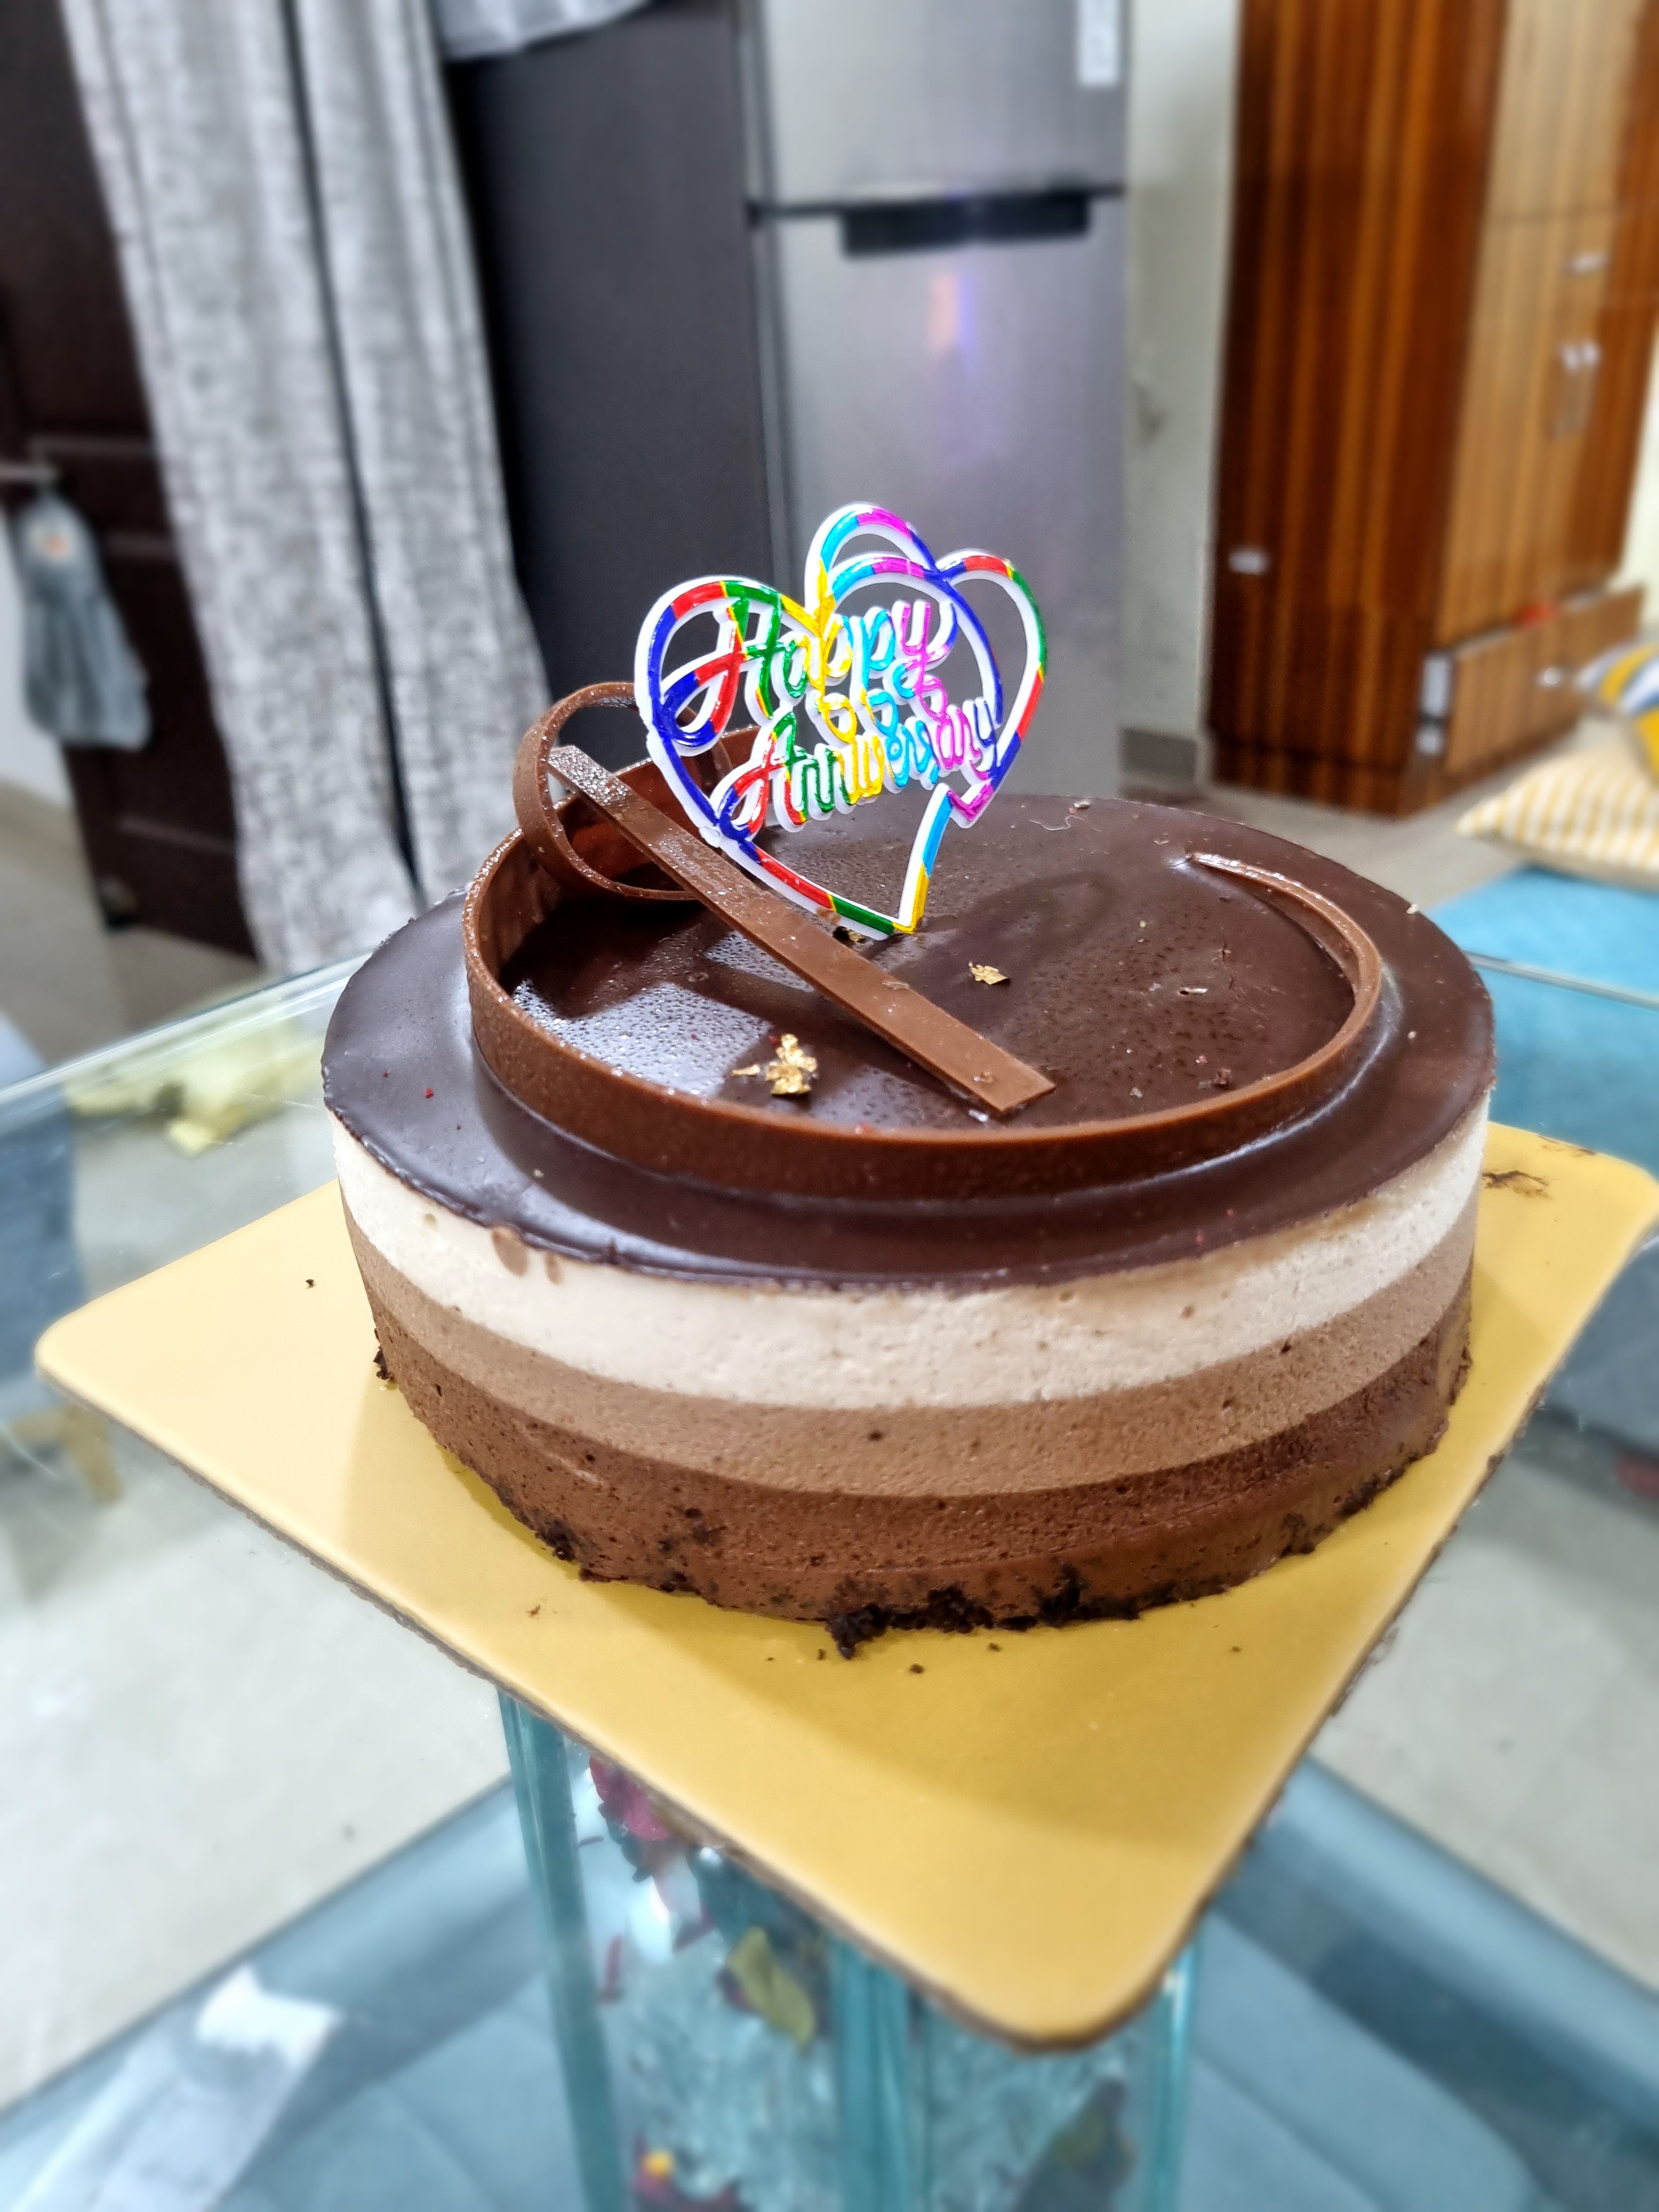 Cake 'N' Joy, Satellite, Ahmedabad | Zomato